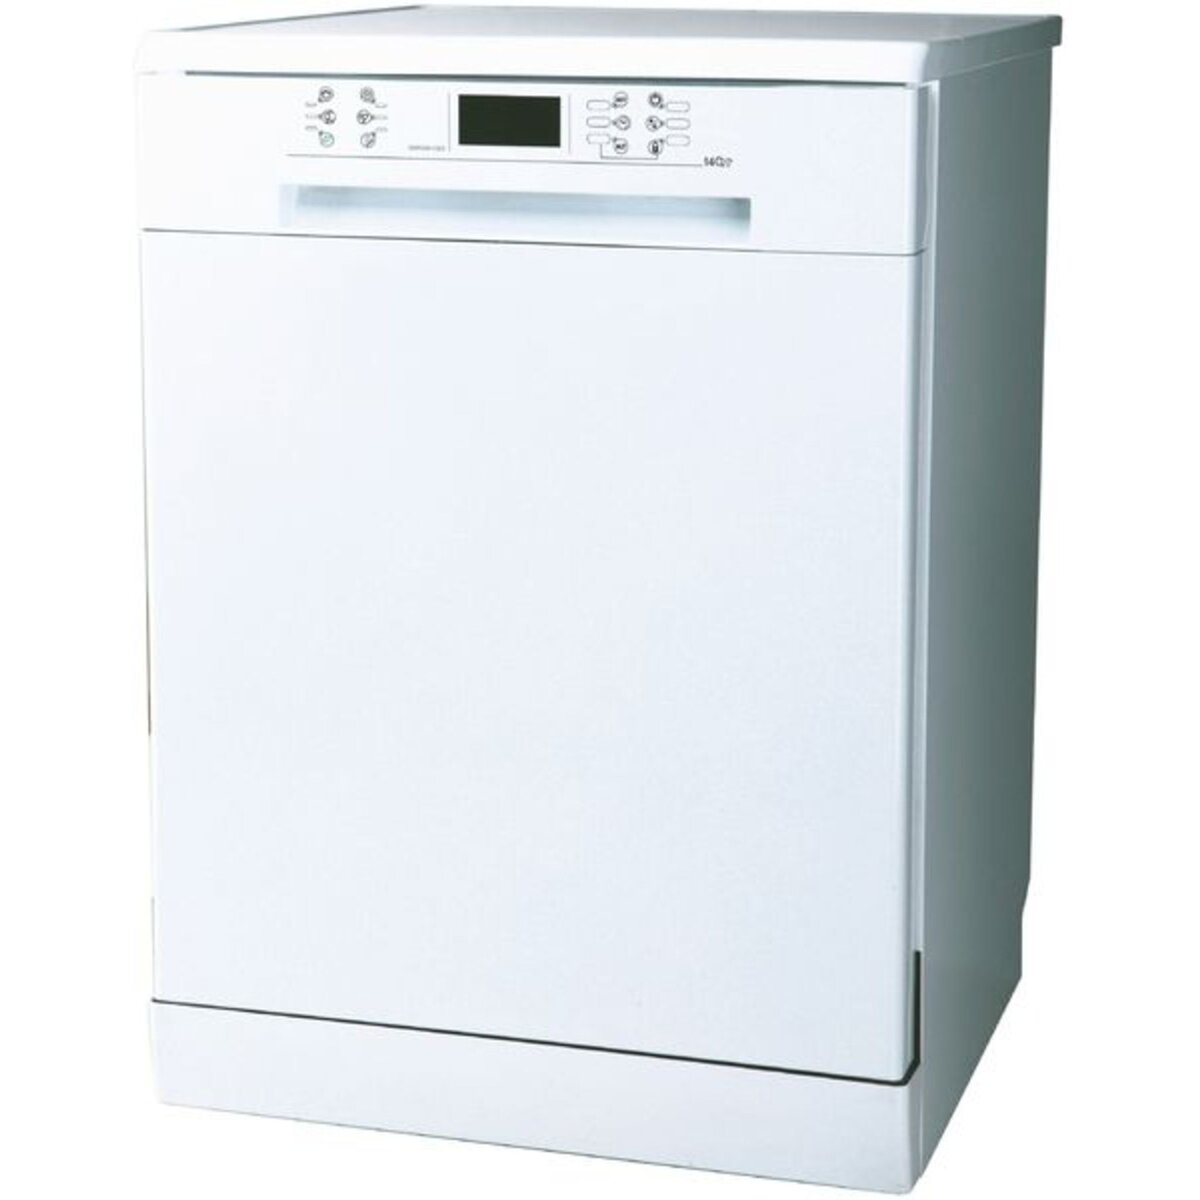 QILIVE Lave vaisselle QLV1445-838714 14 couverts, 60 cm, 45 dB, Pose libre, Départ différé